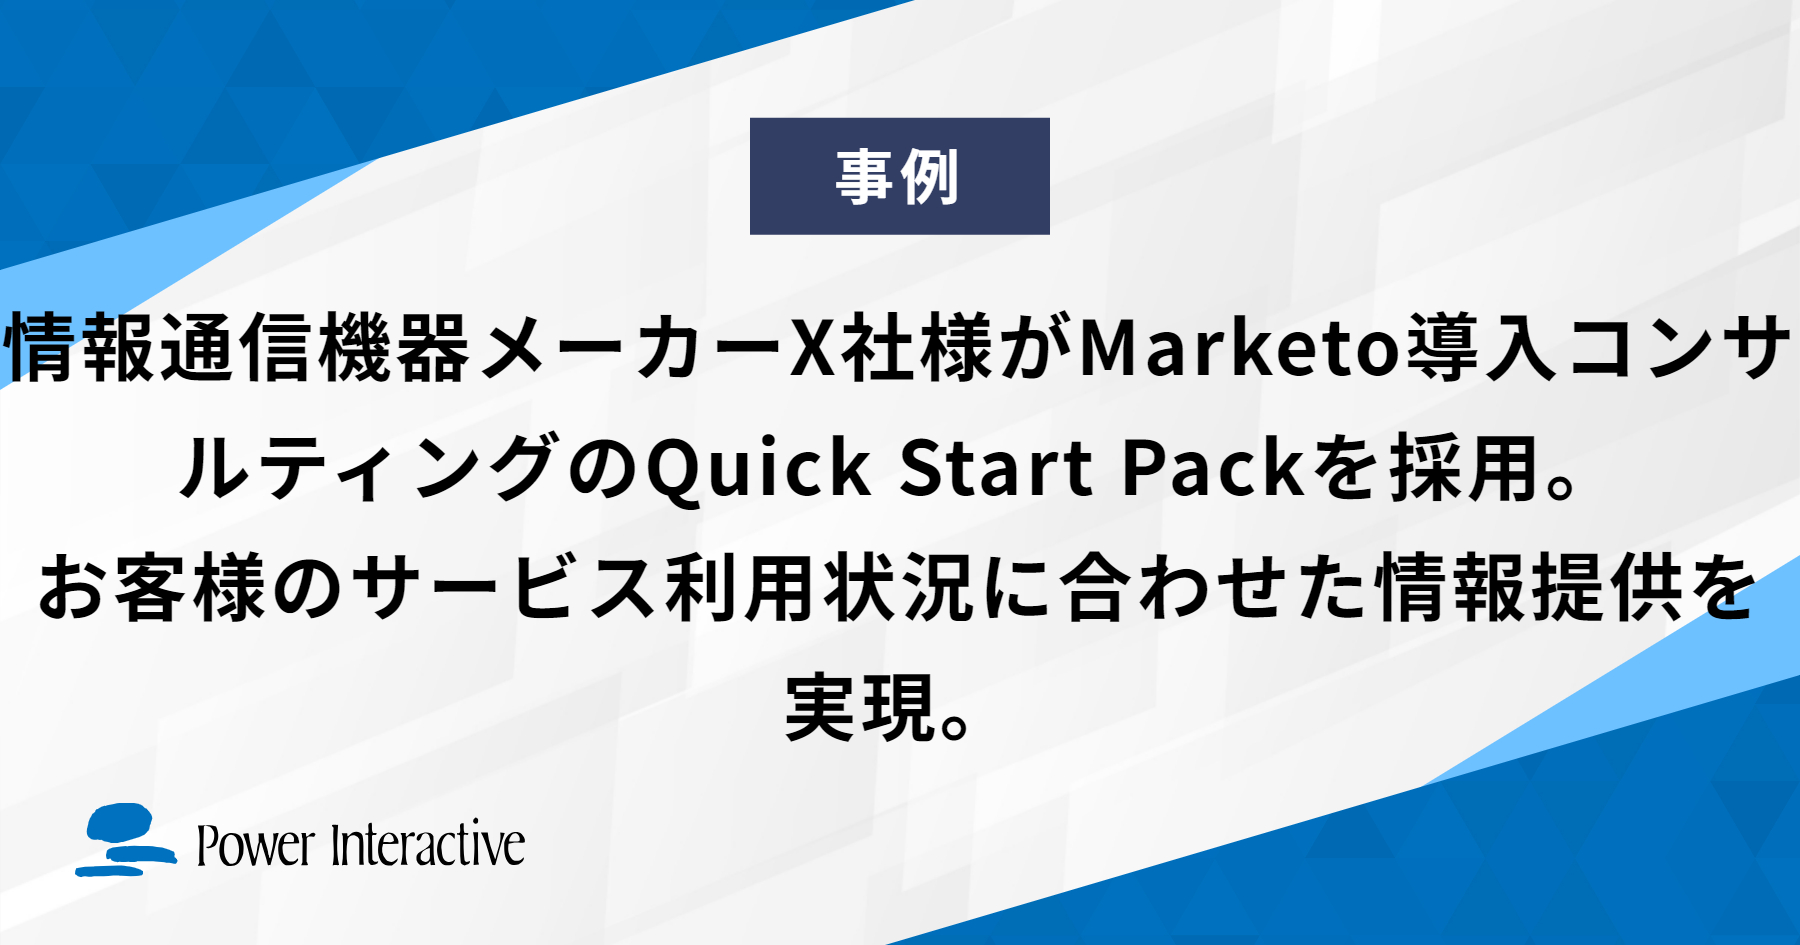 情報通信機器メーカーX社様がMarketo導入コンサルティングのQuick Start Packを採用。お客様のサービス利用状況に合わせた情報提供を実現。